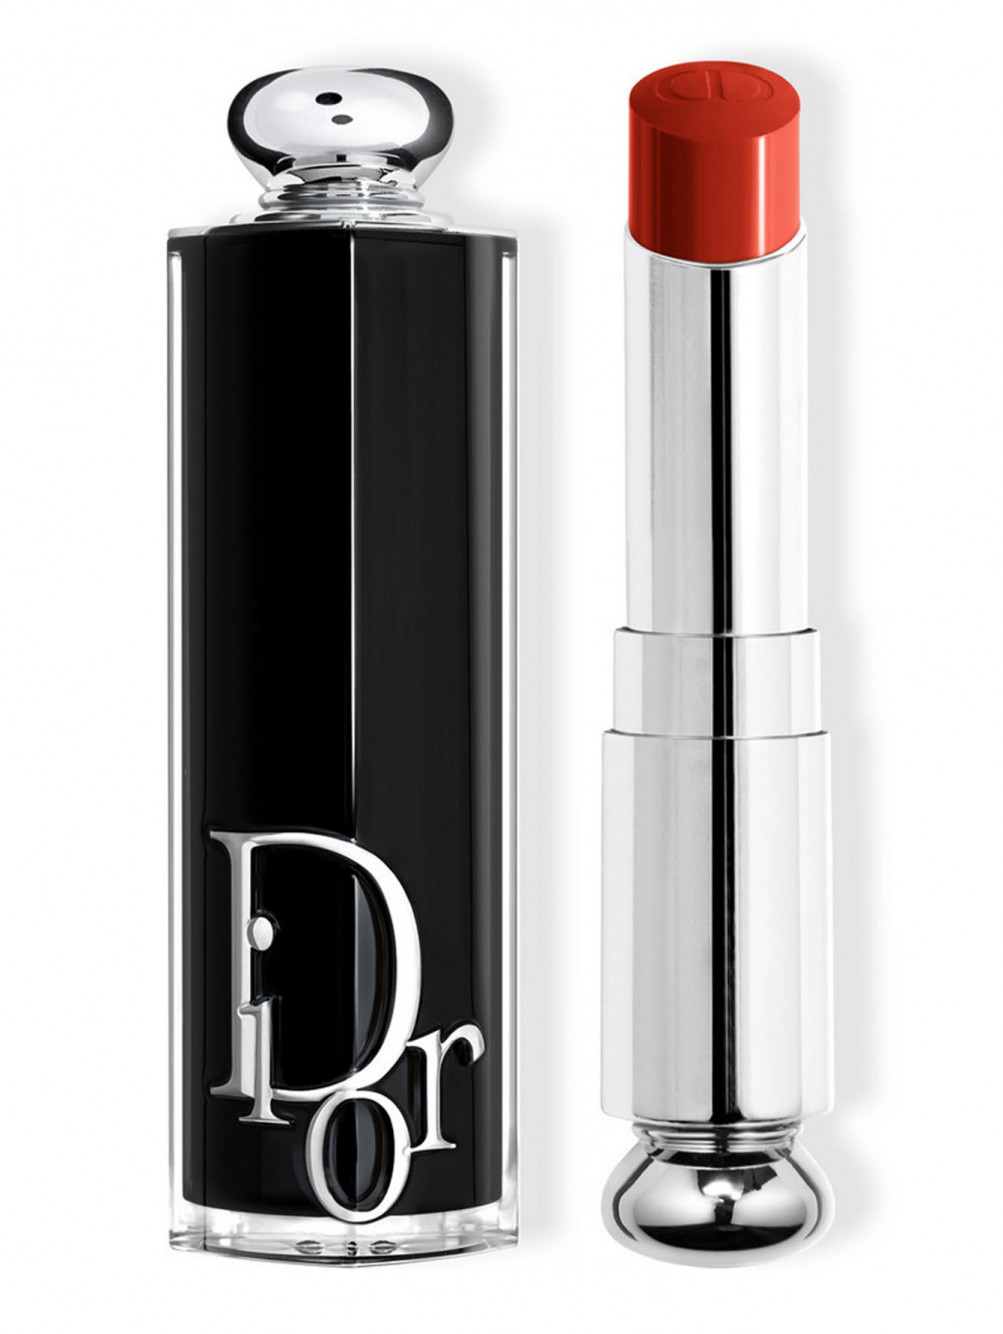 Помада для губ Dior Addict, Диор 8, 3,2 г - Общий вид